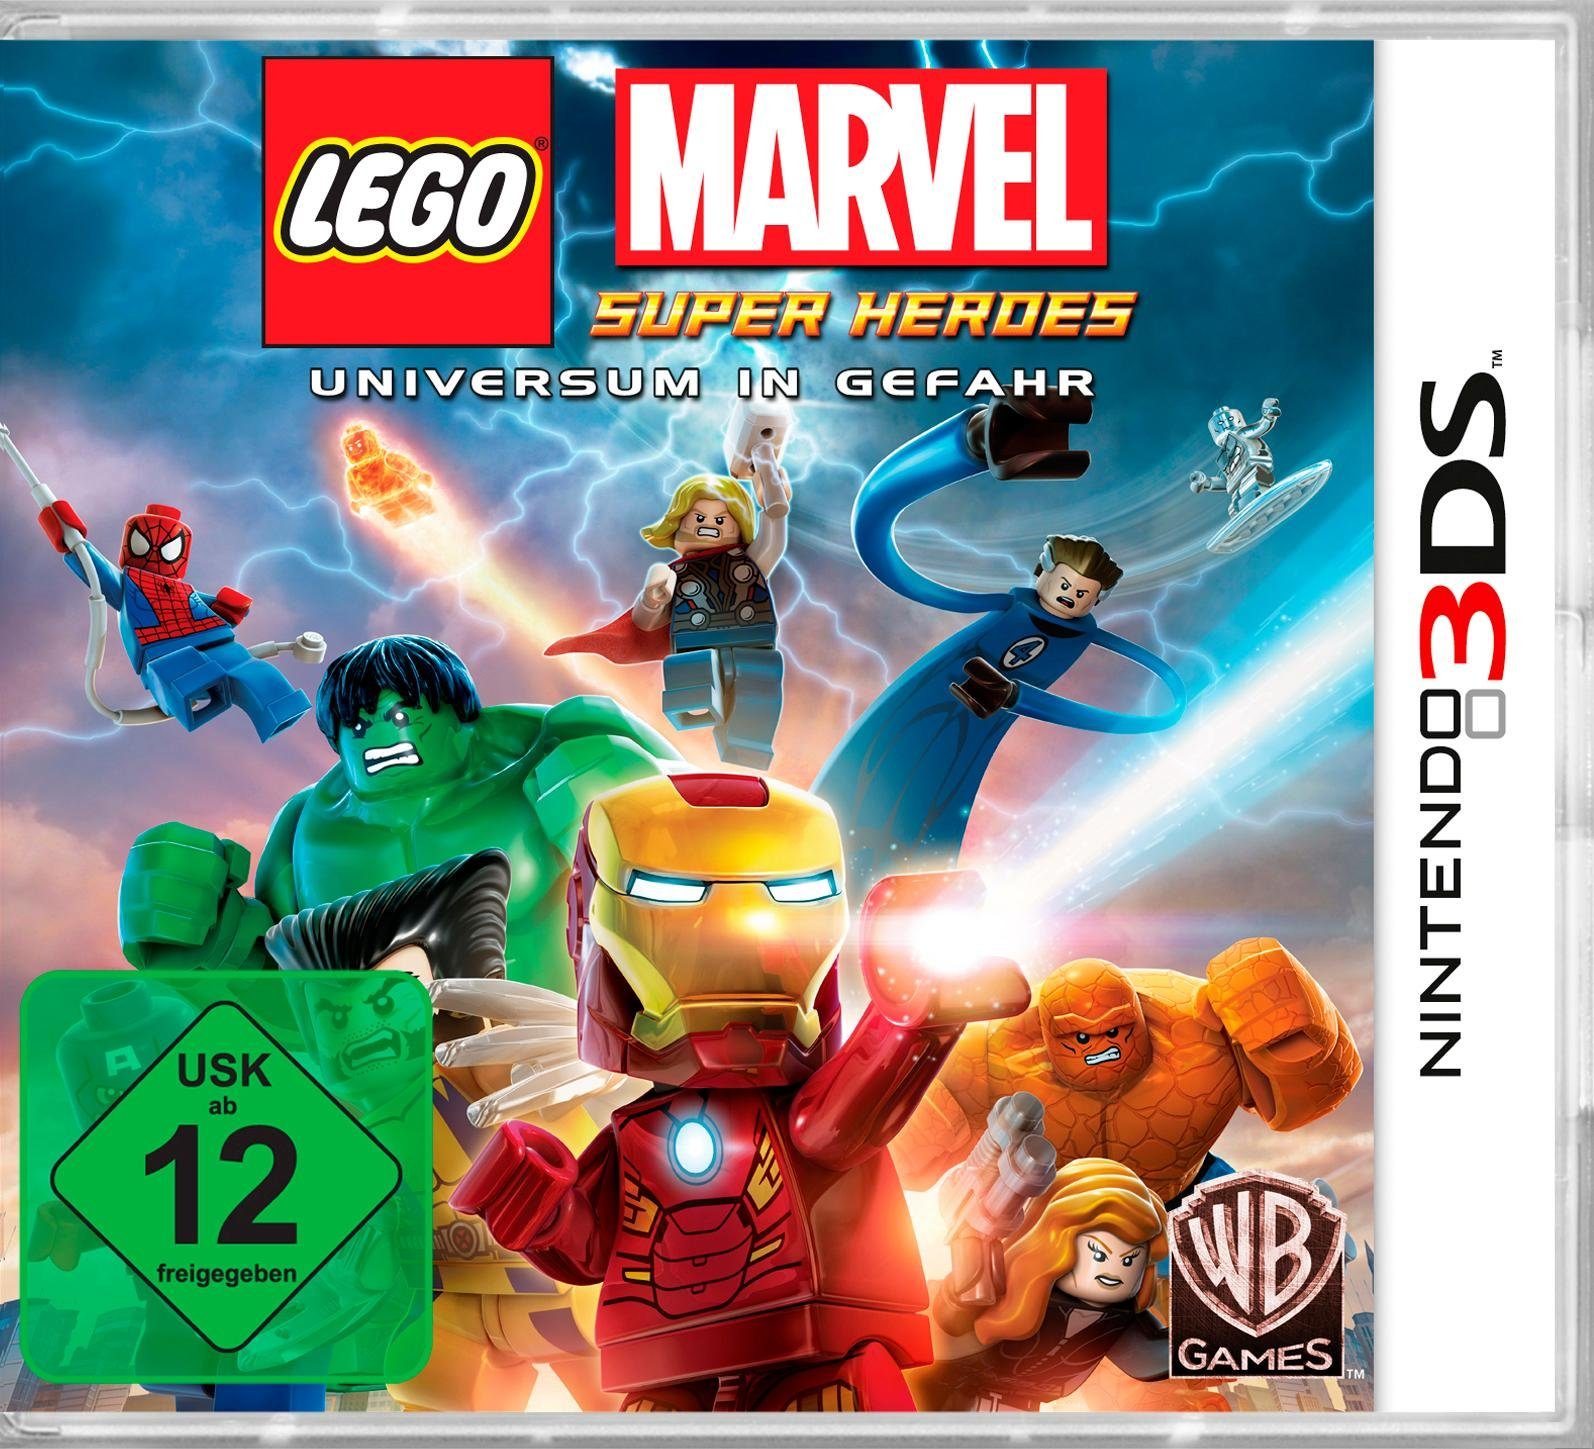 Warner Games Lego 3DS, Nintendo Heroes Pyramide Super Marvel Software